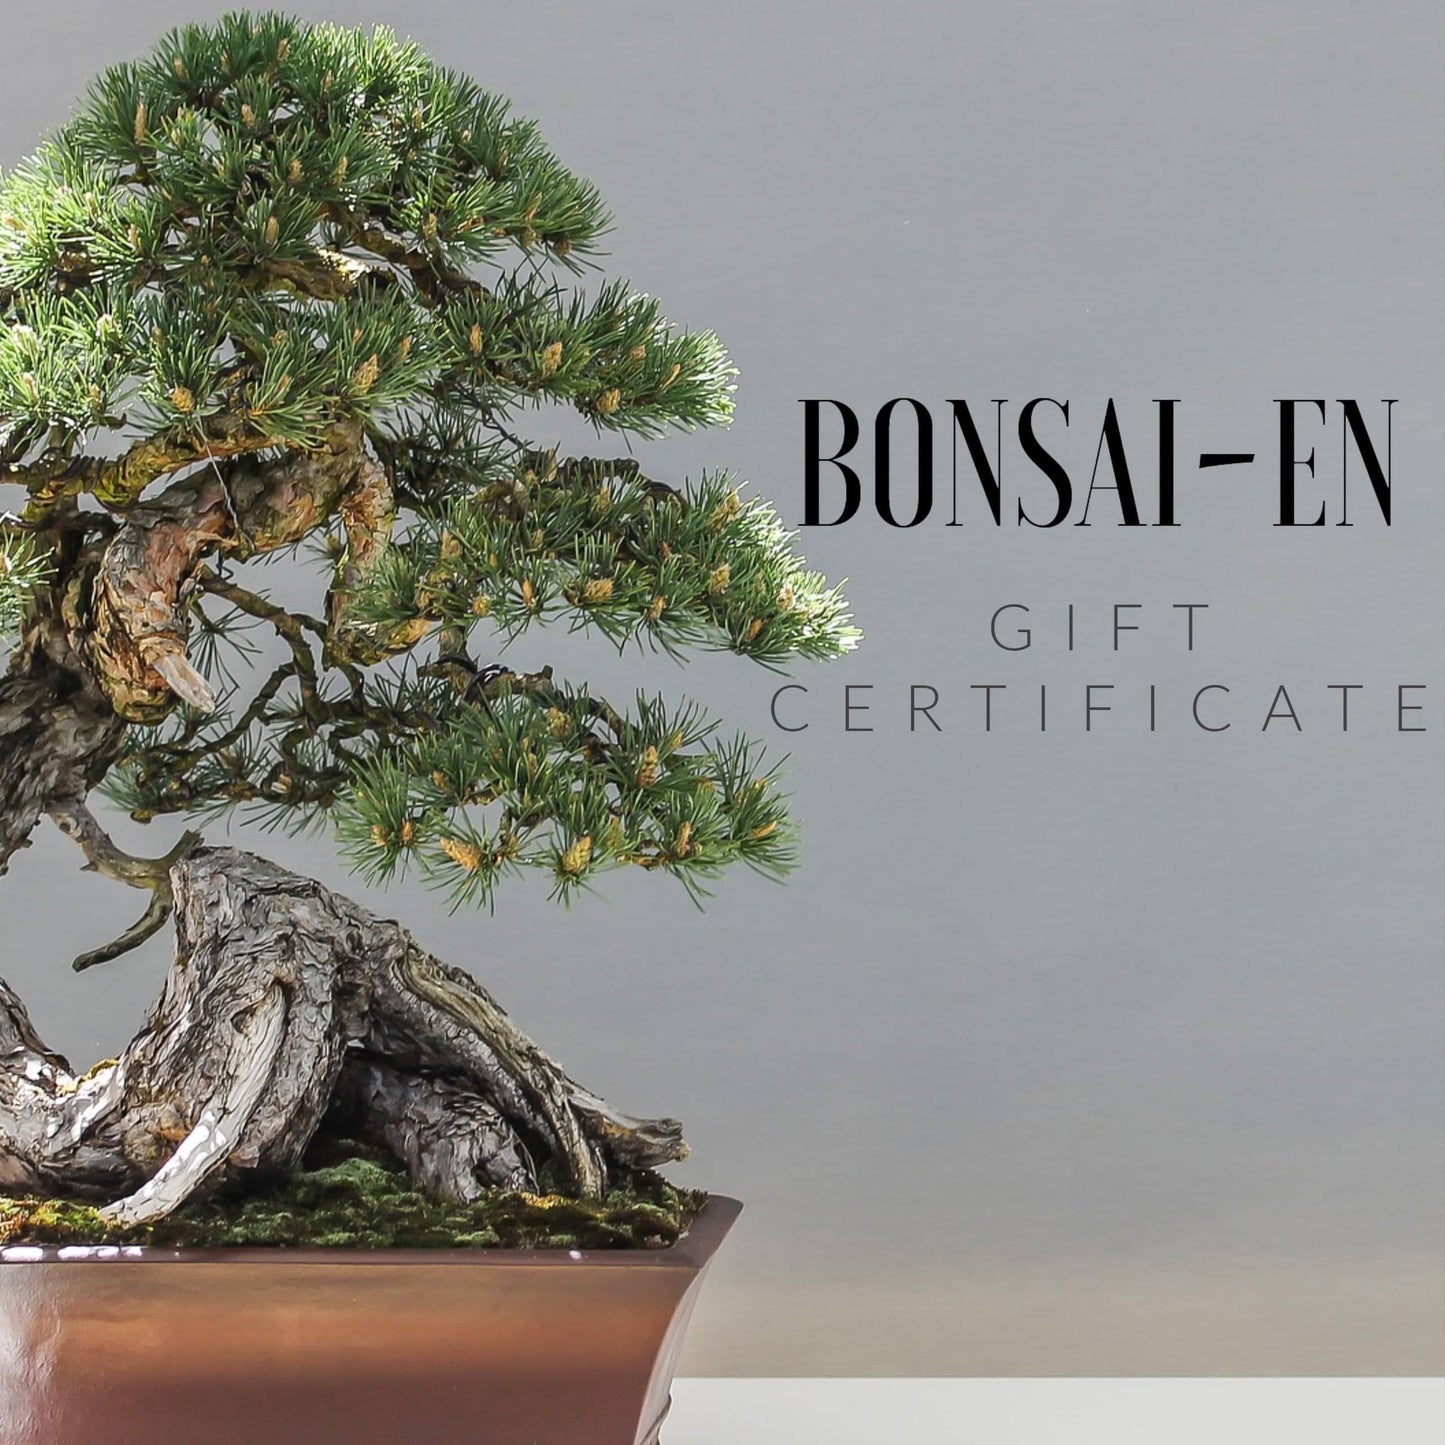 Bonsai-En Gift Certificate $10 - $100 - Bonsai-En